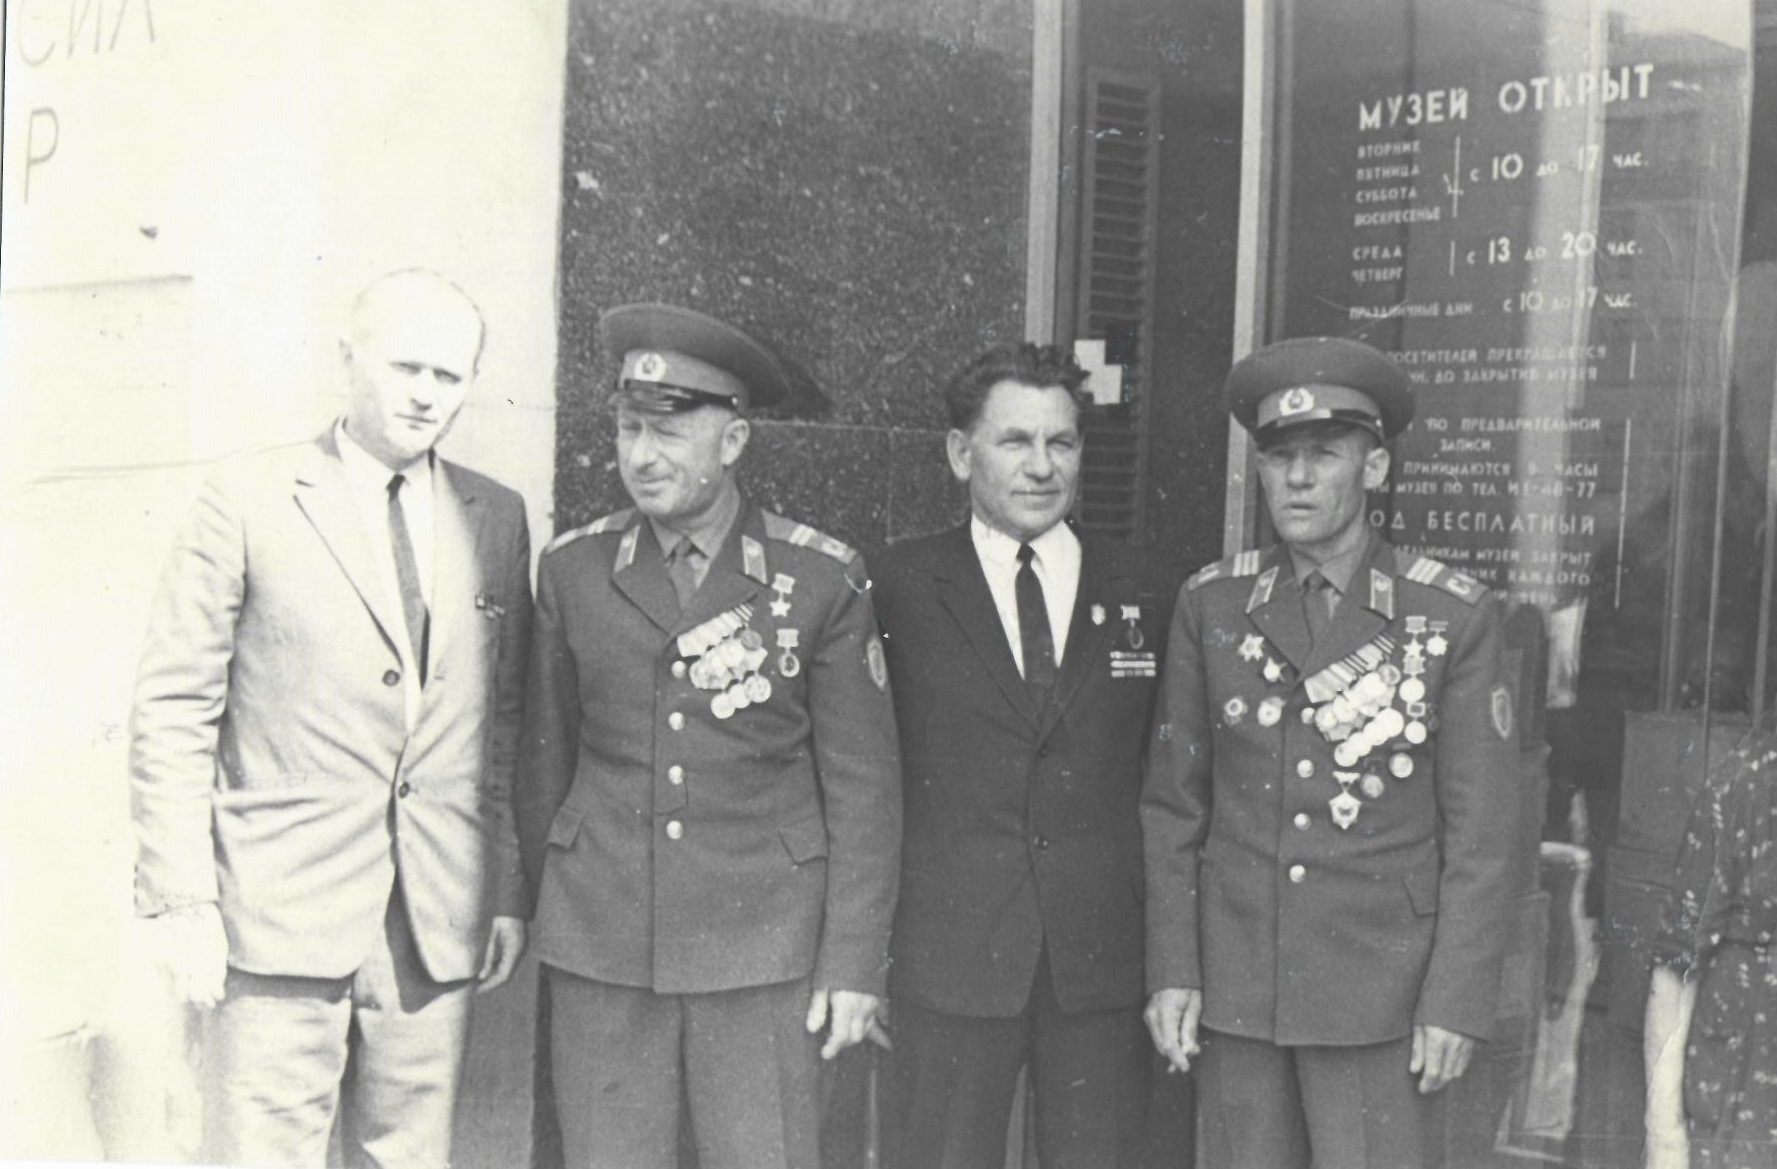 Слева направо: Василий Рыжков, Мелитон Кантария, неизвестный мужчина, Михаил Егоров